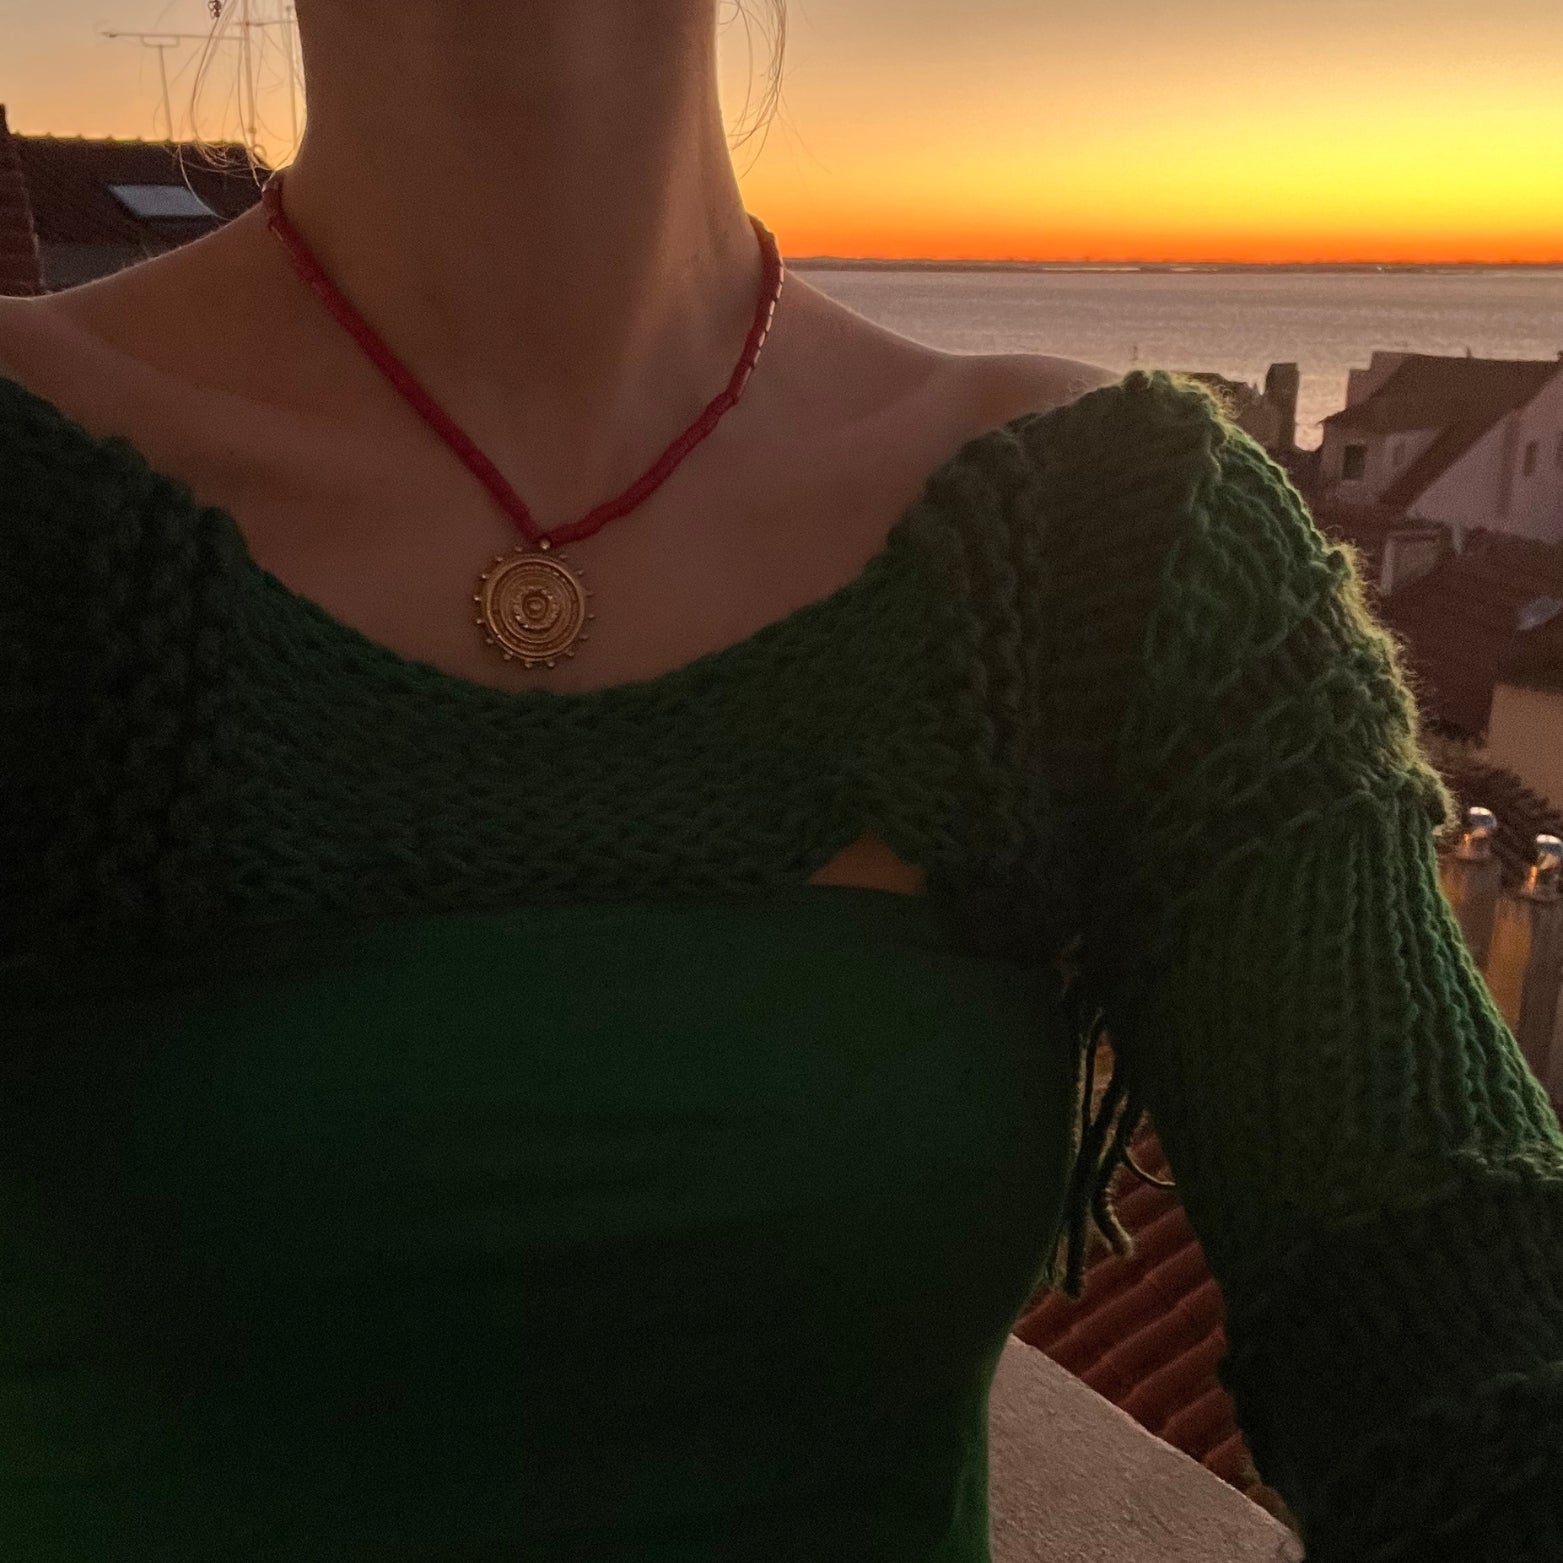 The Viviendo necklace